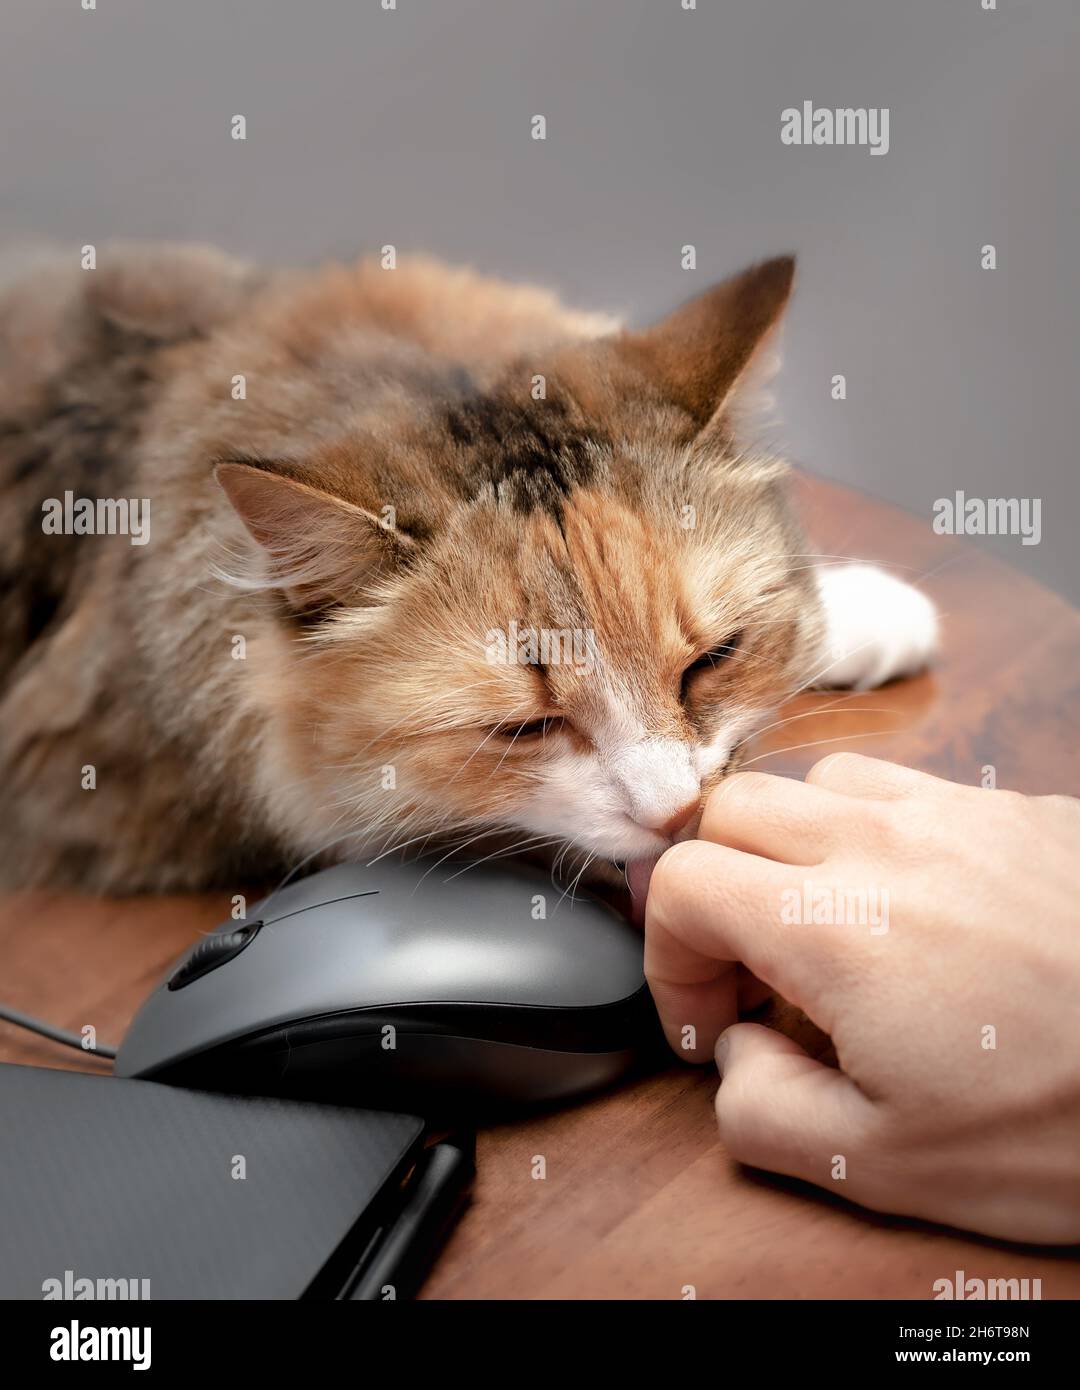 Primo piano del gatto che lecca la mano umana mentre lavora sul laptop. Carino gatto soffice mostrando affetto e legame sociale o amicizia con il proprietario dell'animale domestico, mentre Foto Stock